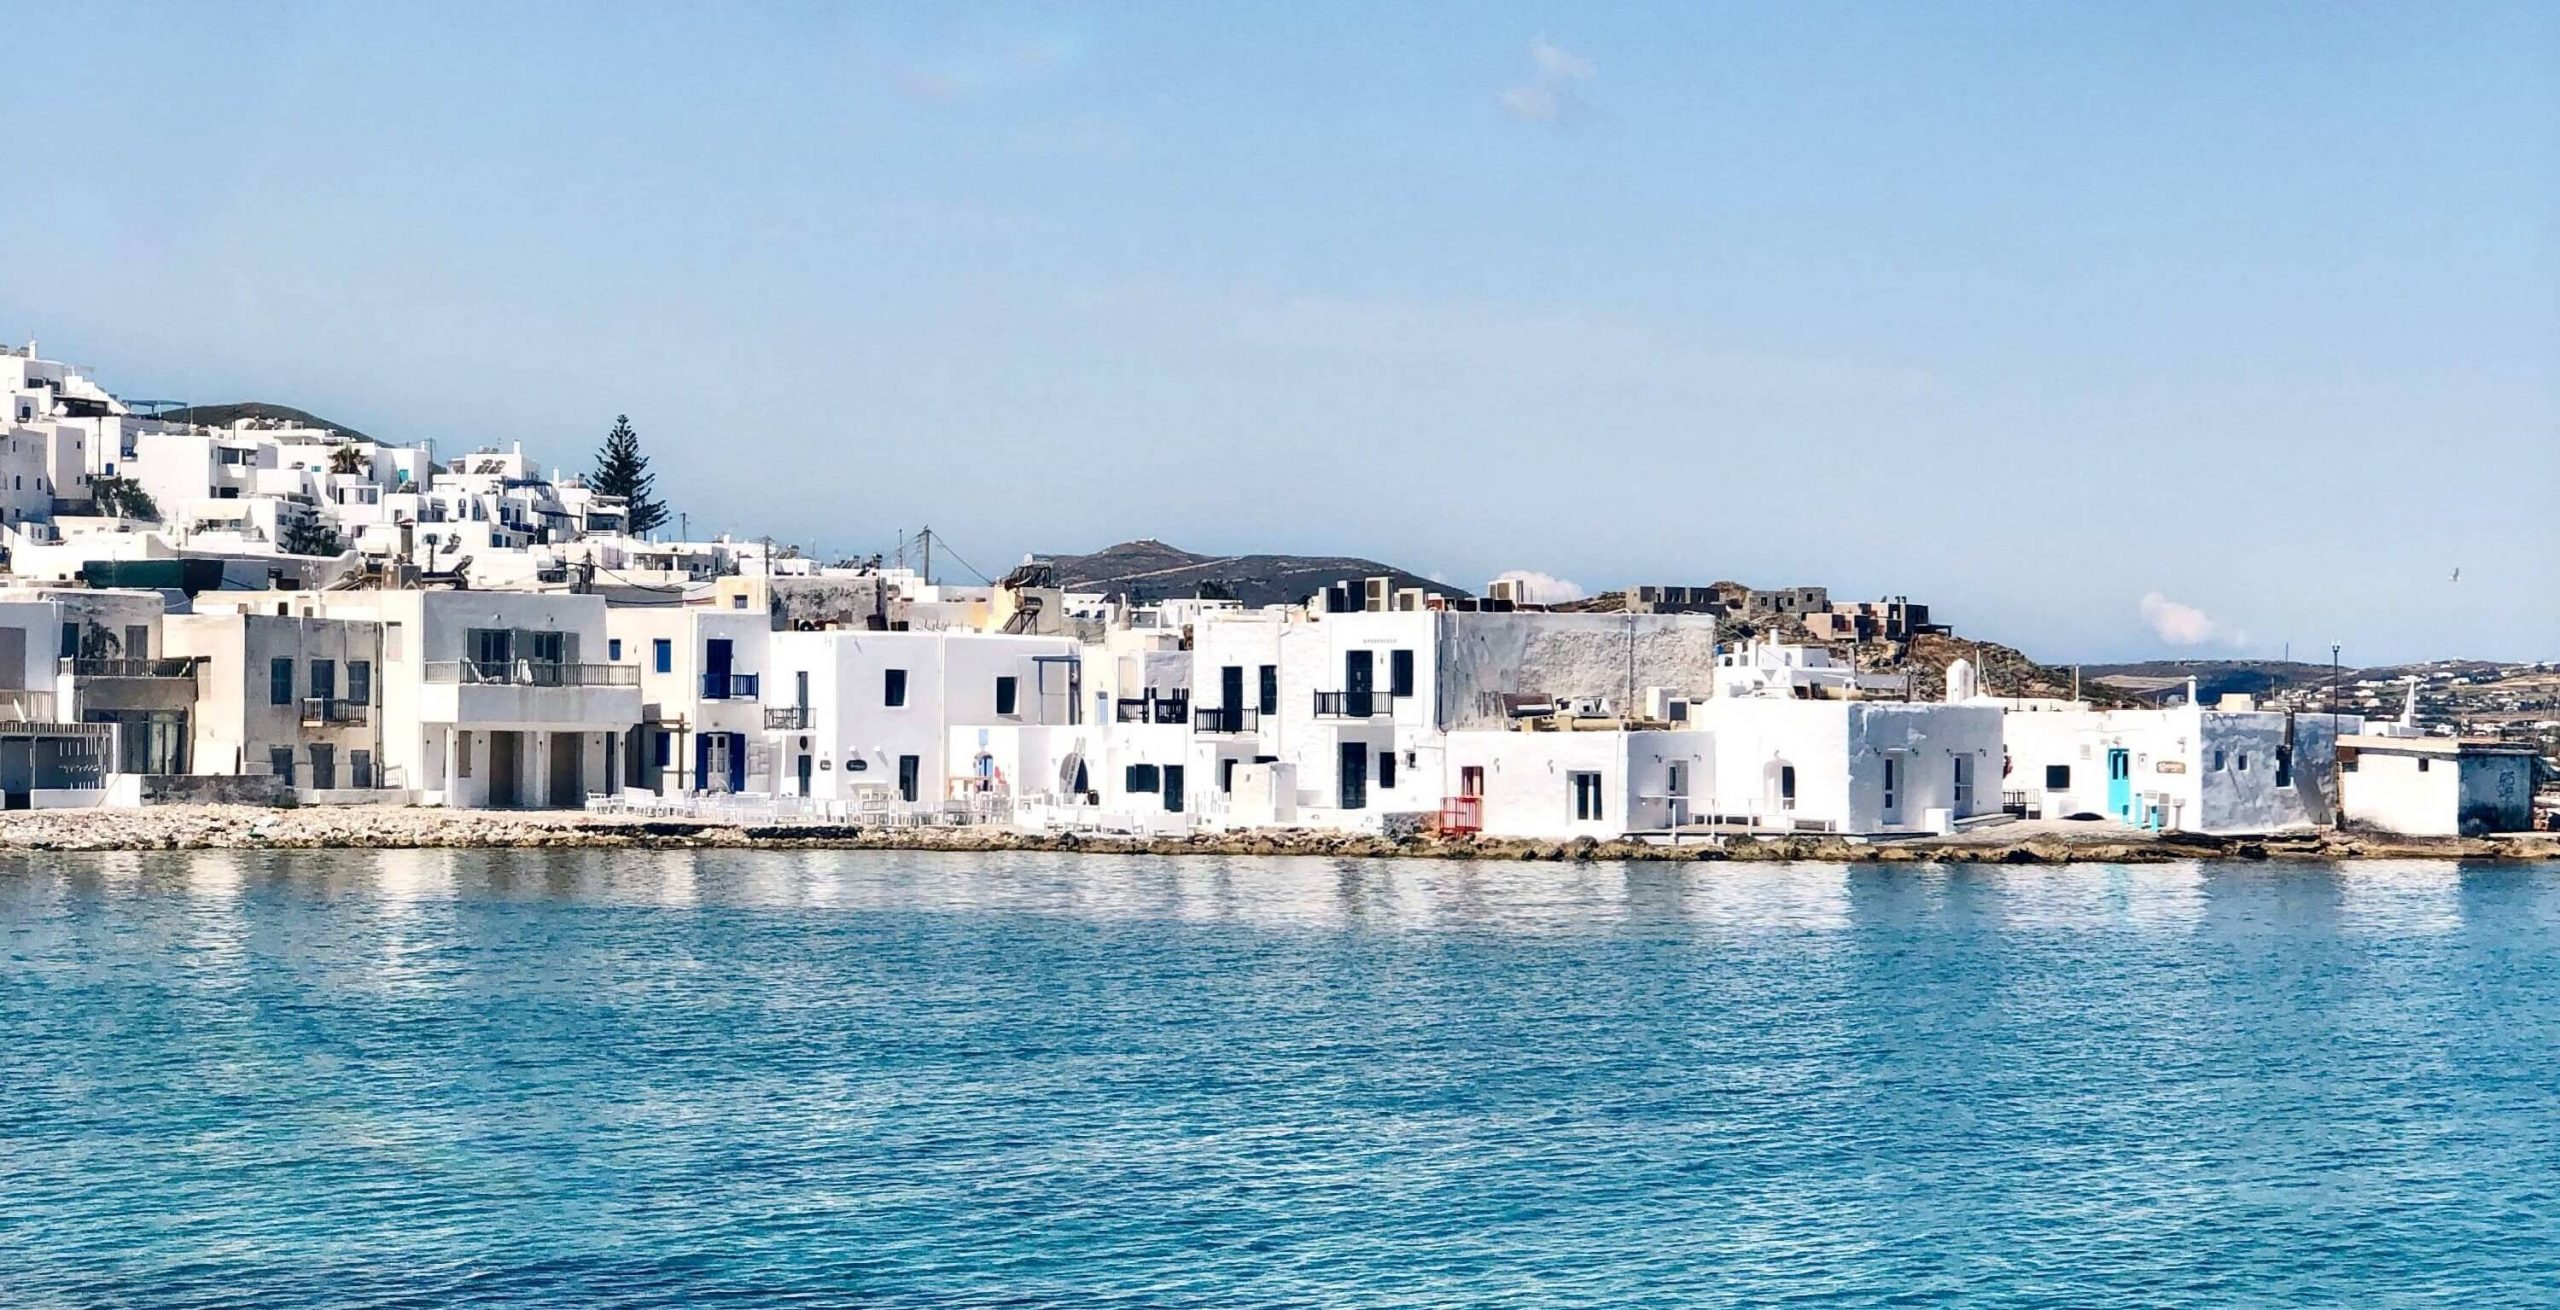 Acility and Cicicom transform Paros into “Europe’s first smart island”